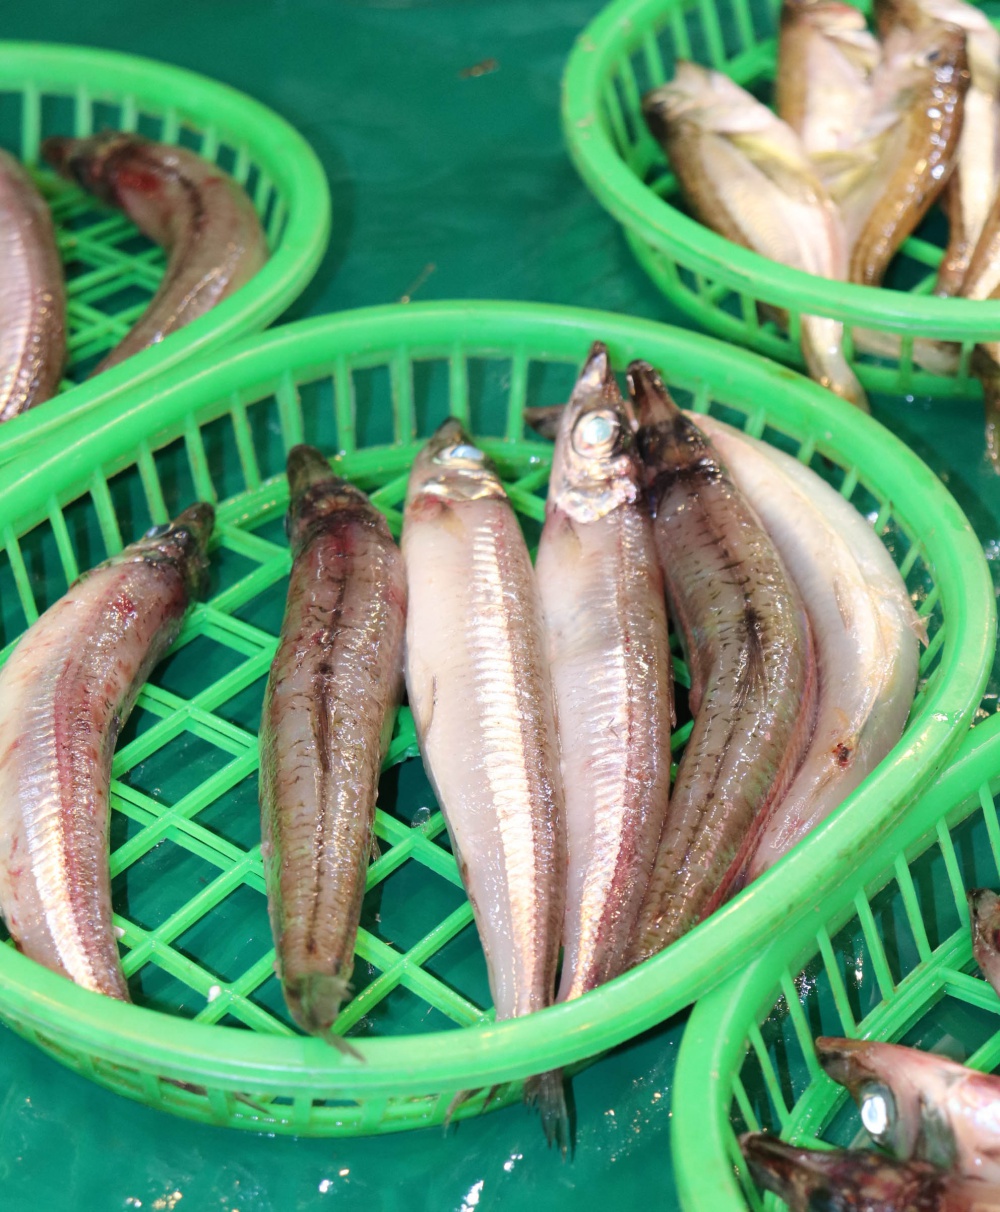 News メギス料理人15 登場 全国一の漁獲量を誇る金沢市産メギスを使った極上の一品が味わえます いいじ金沢